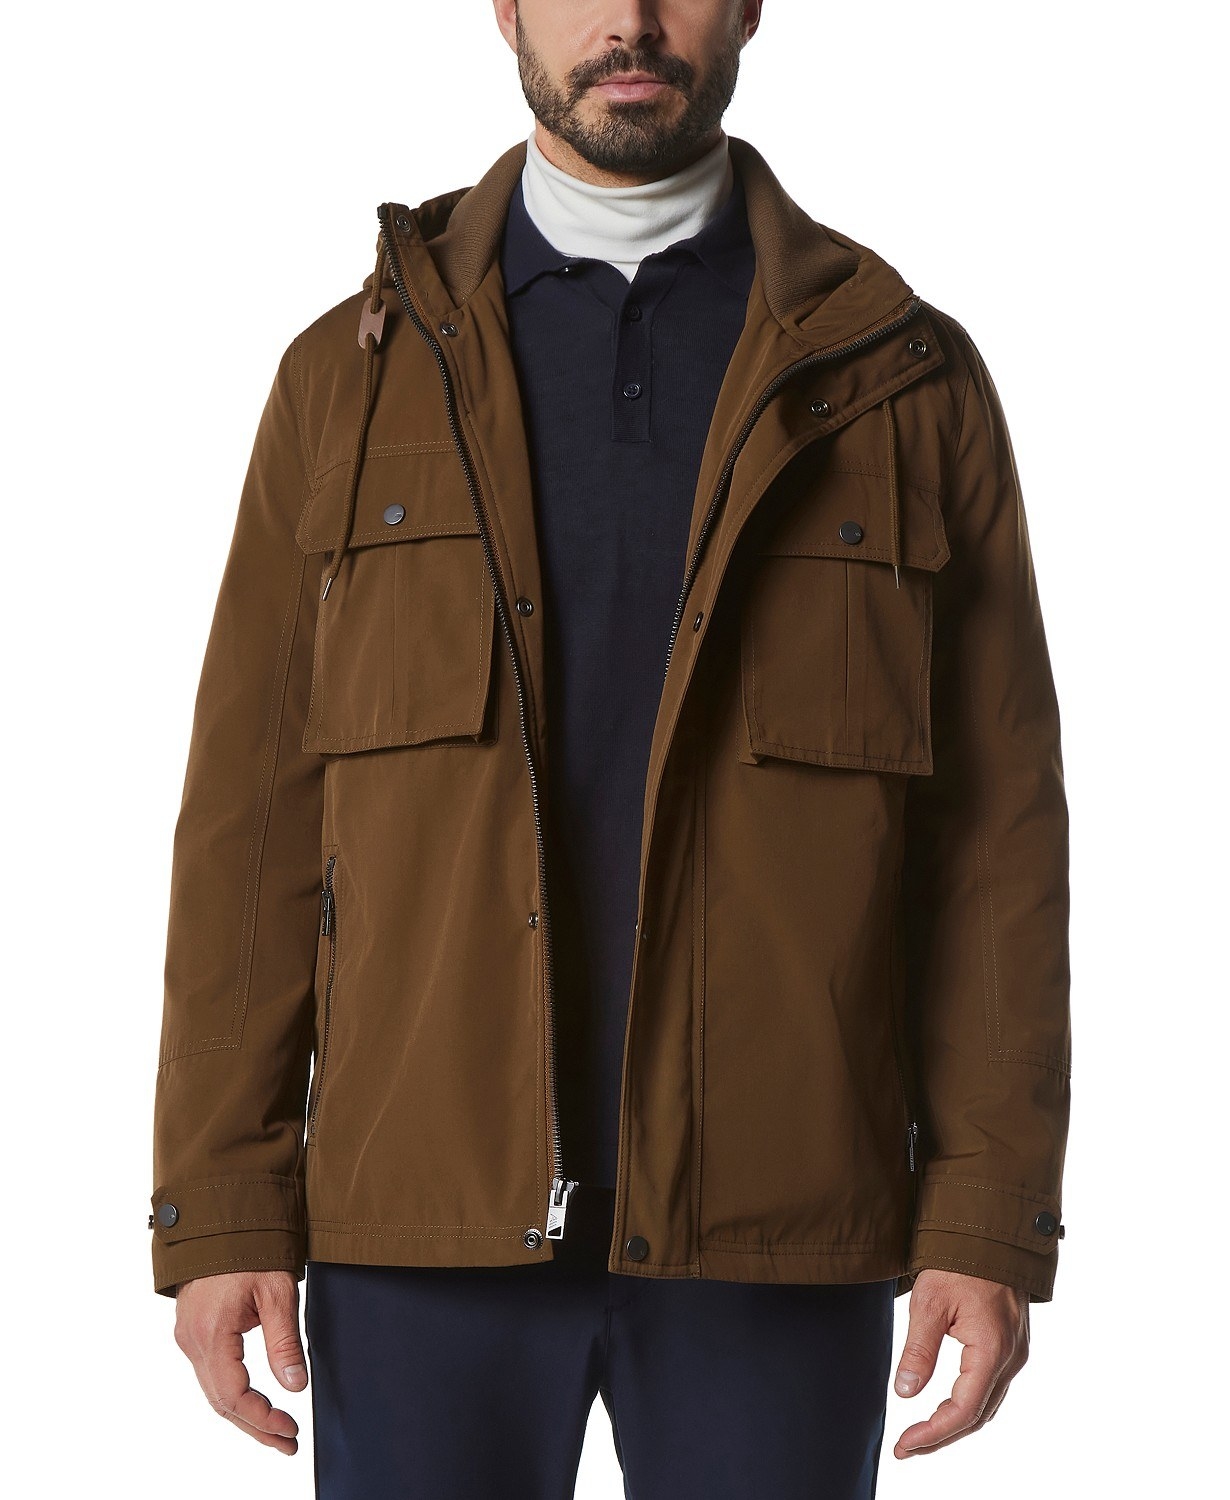 model in brown hooded coat